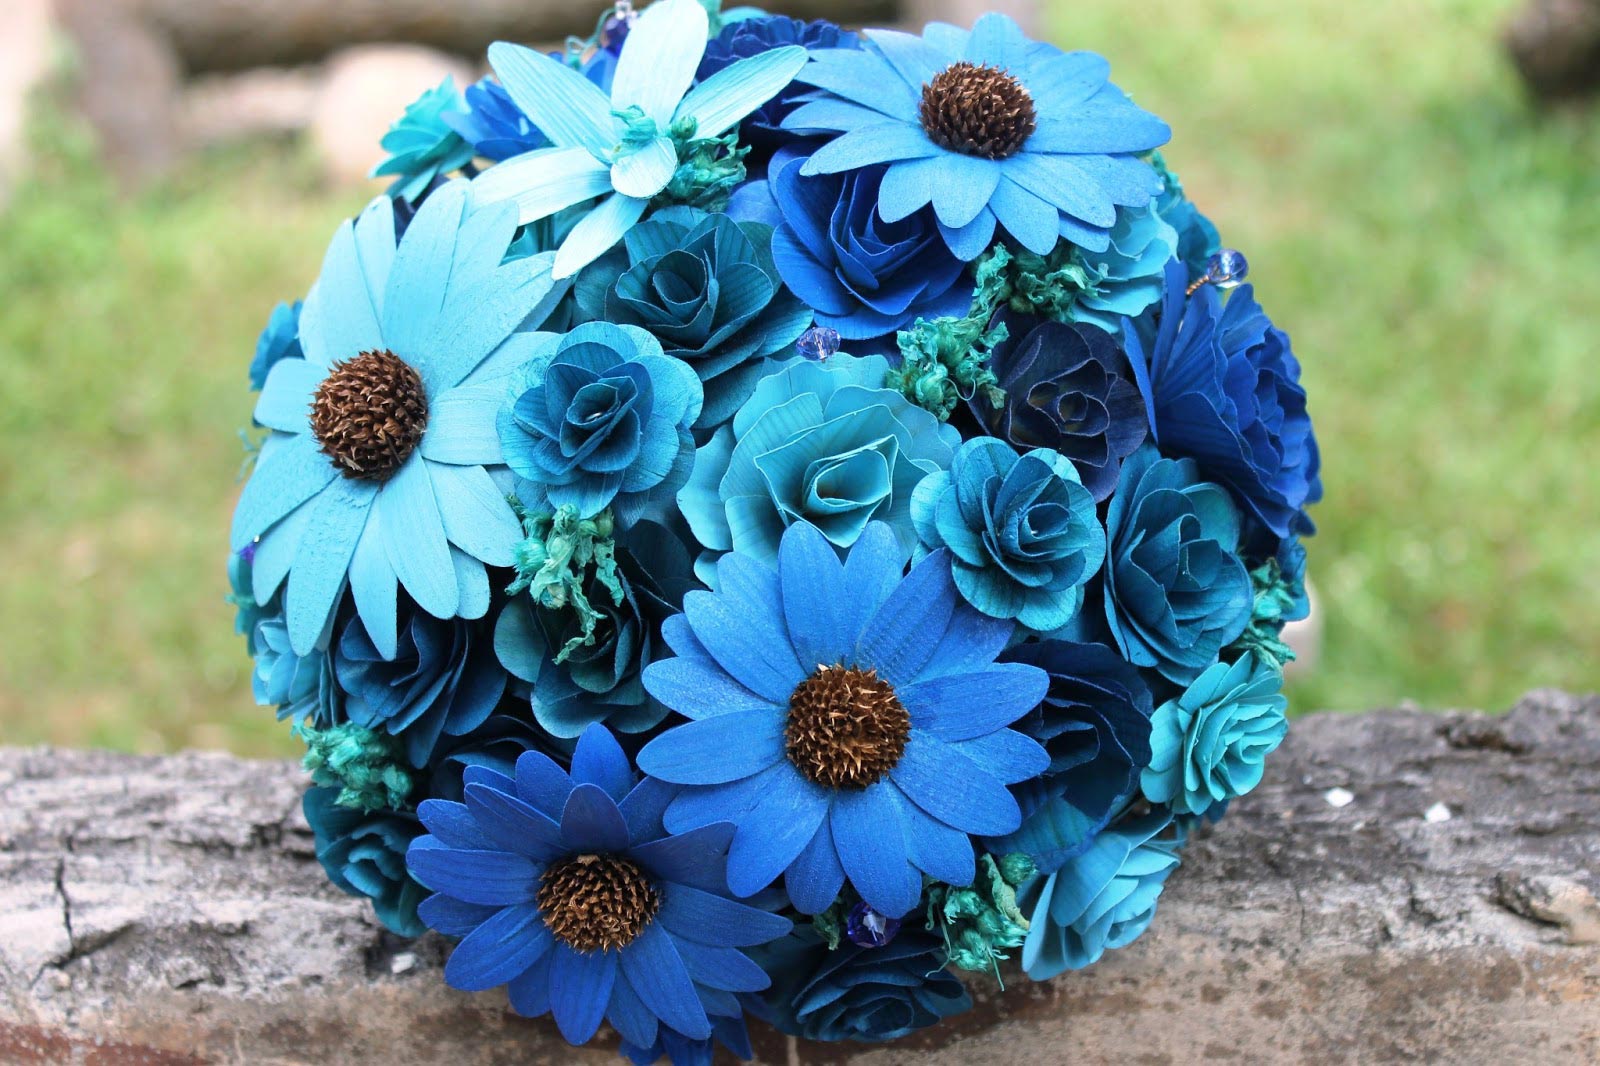 Hoa cưới cầm tay màu xanh dương với hoa cúc bằng giấy